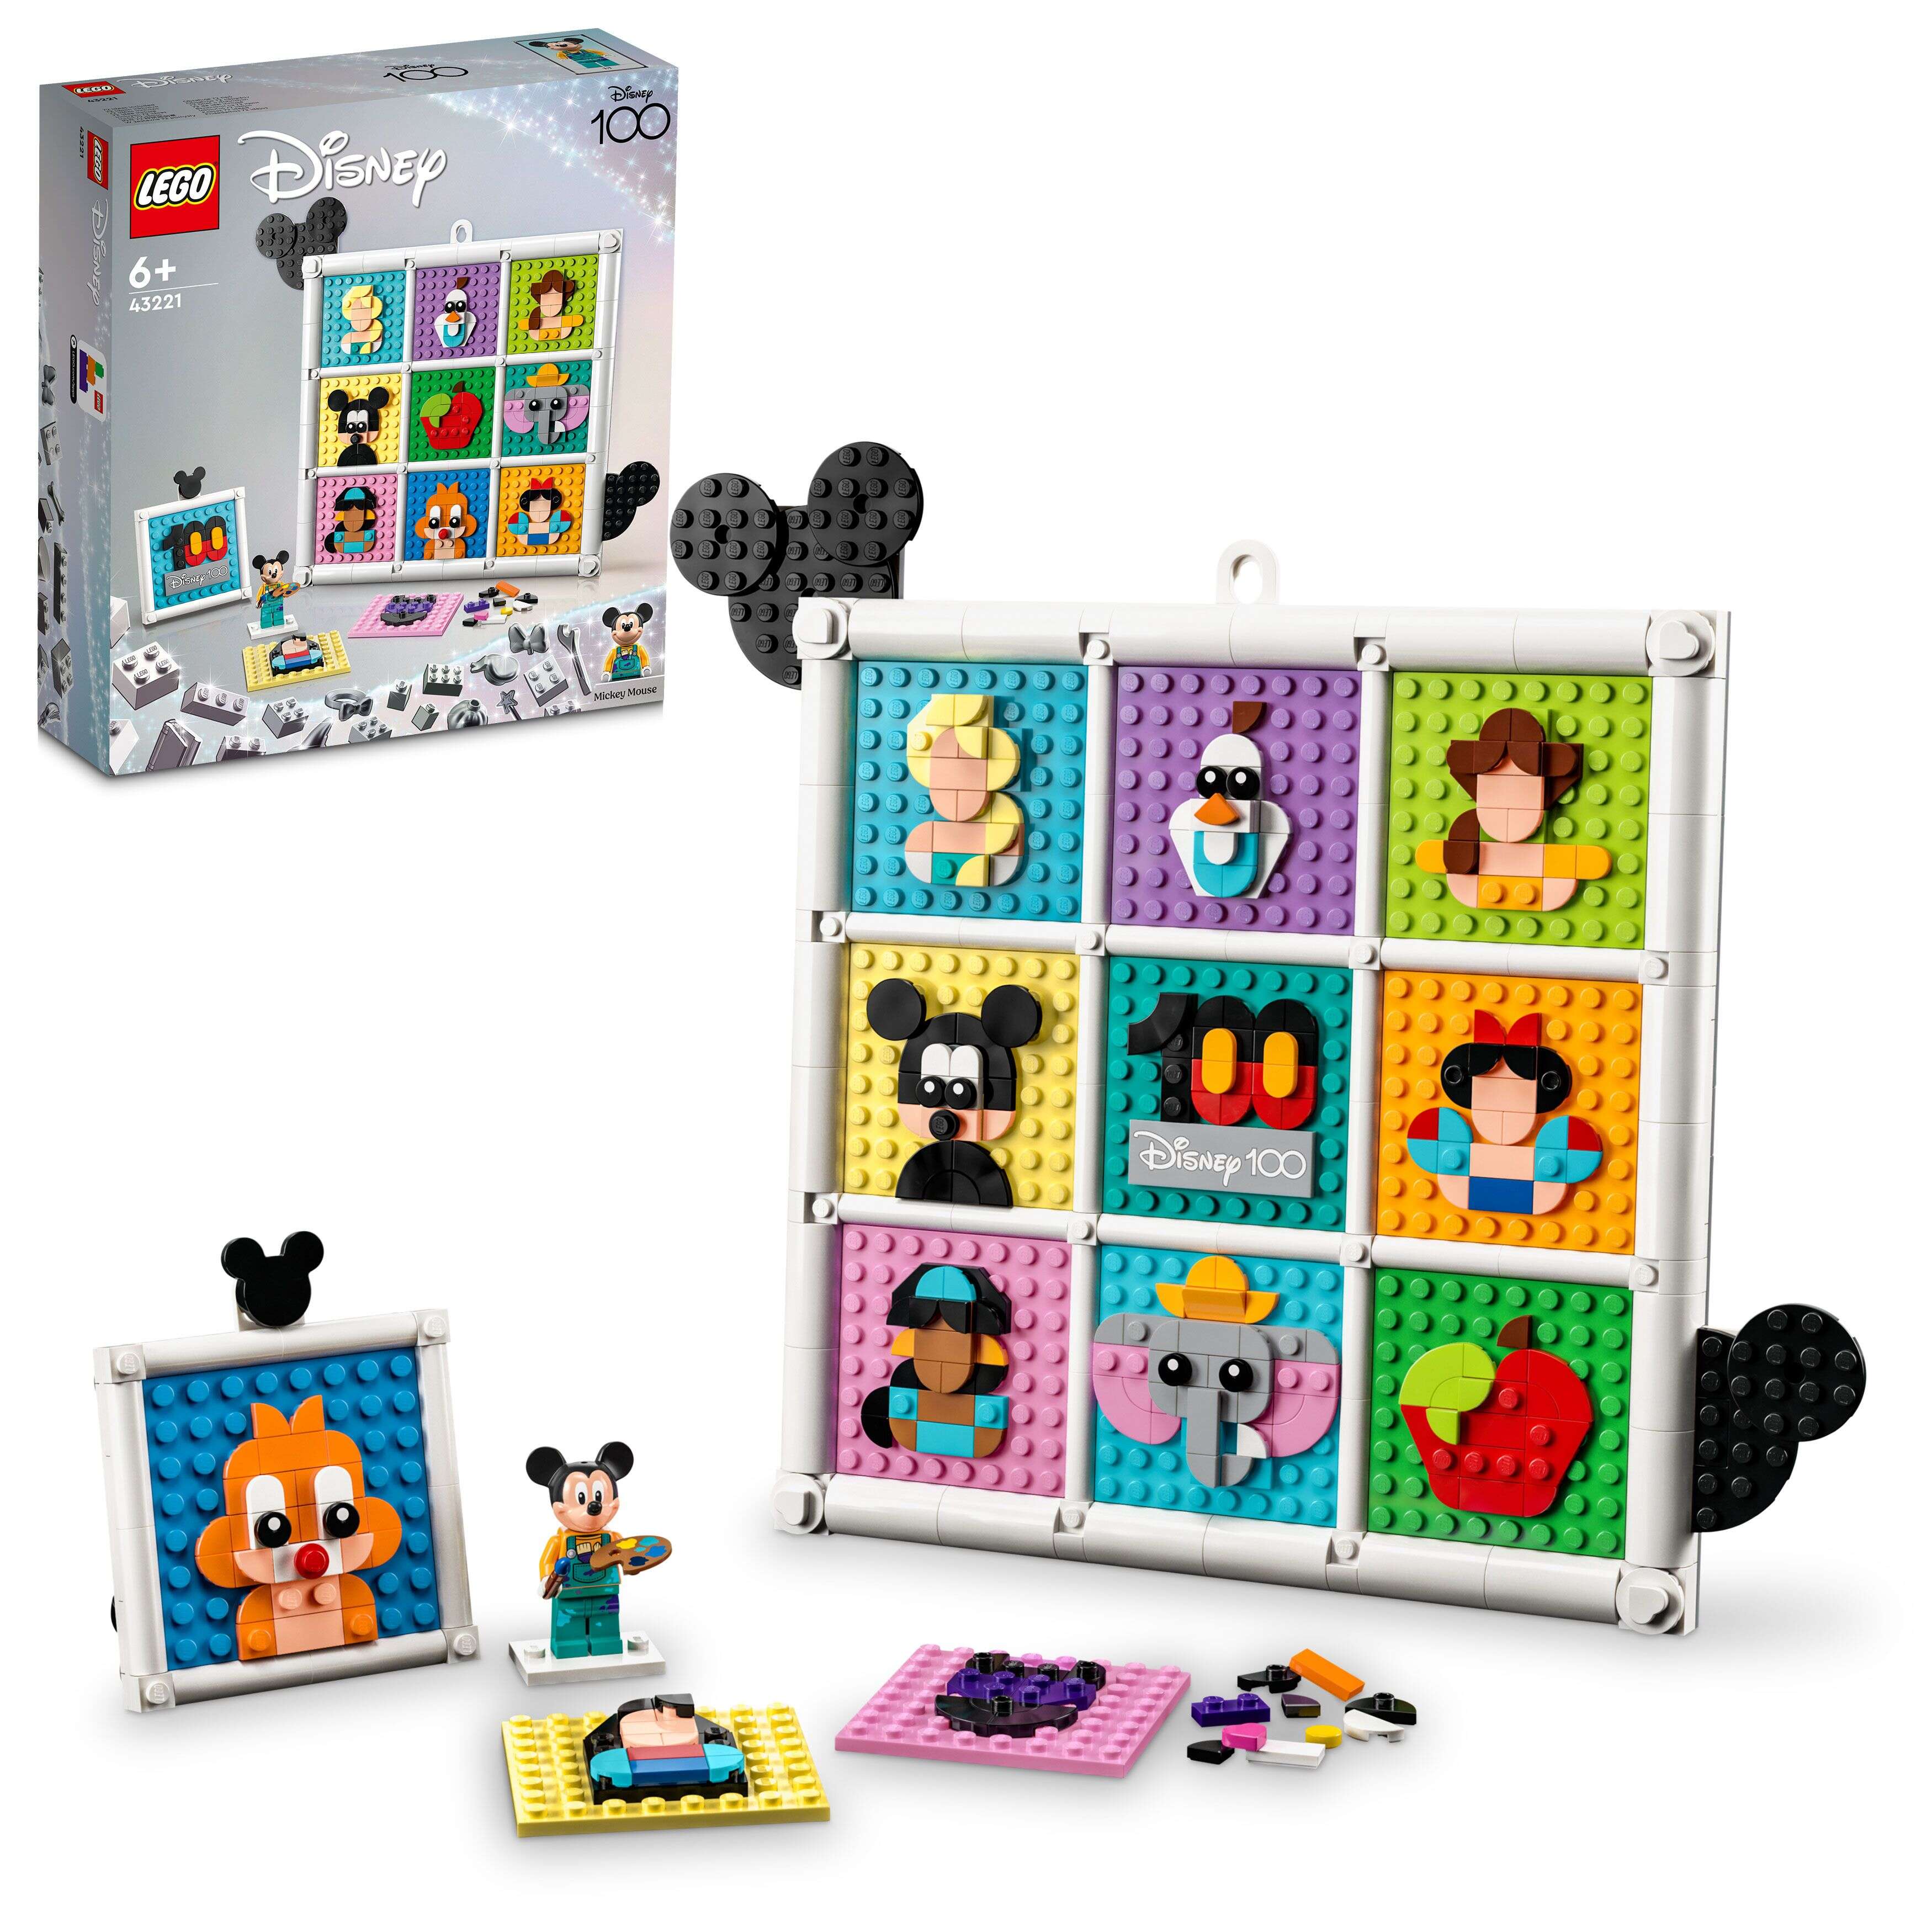 LEGO 43221 Disney Classic 100 Jahre Disney Zeichentrickikonen, zwölf 8x8 Platten